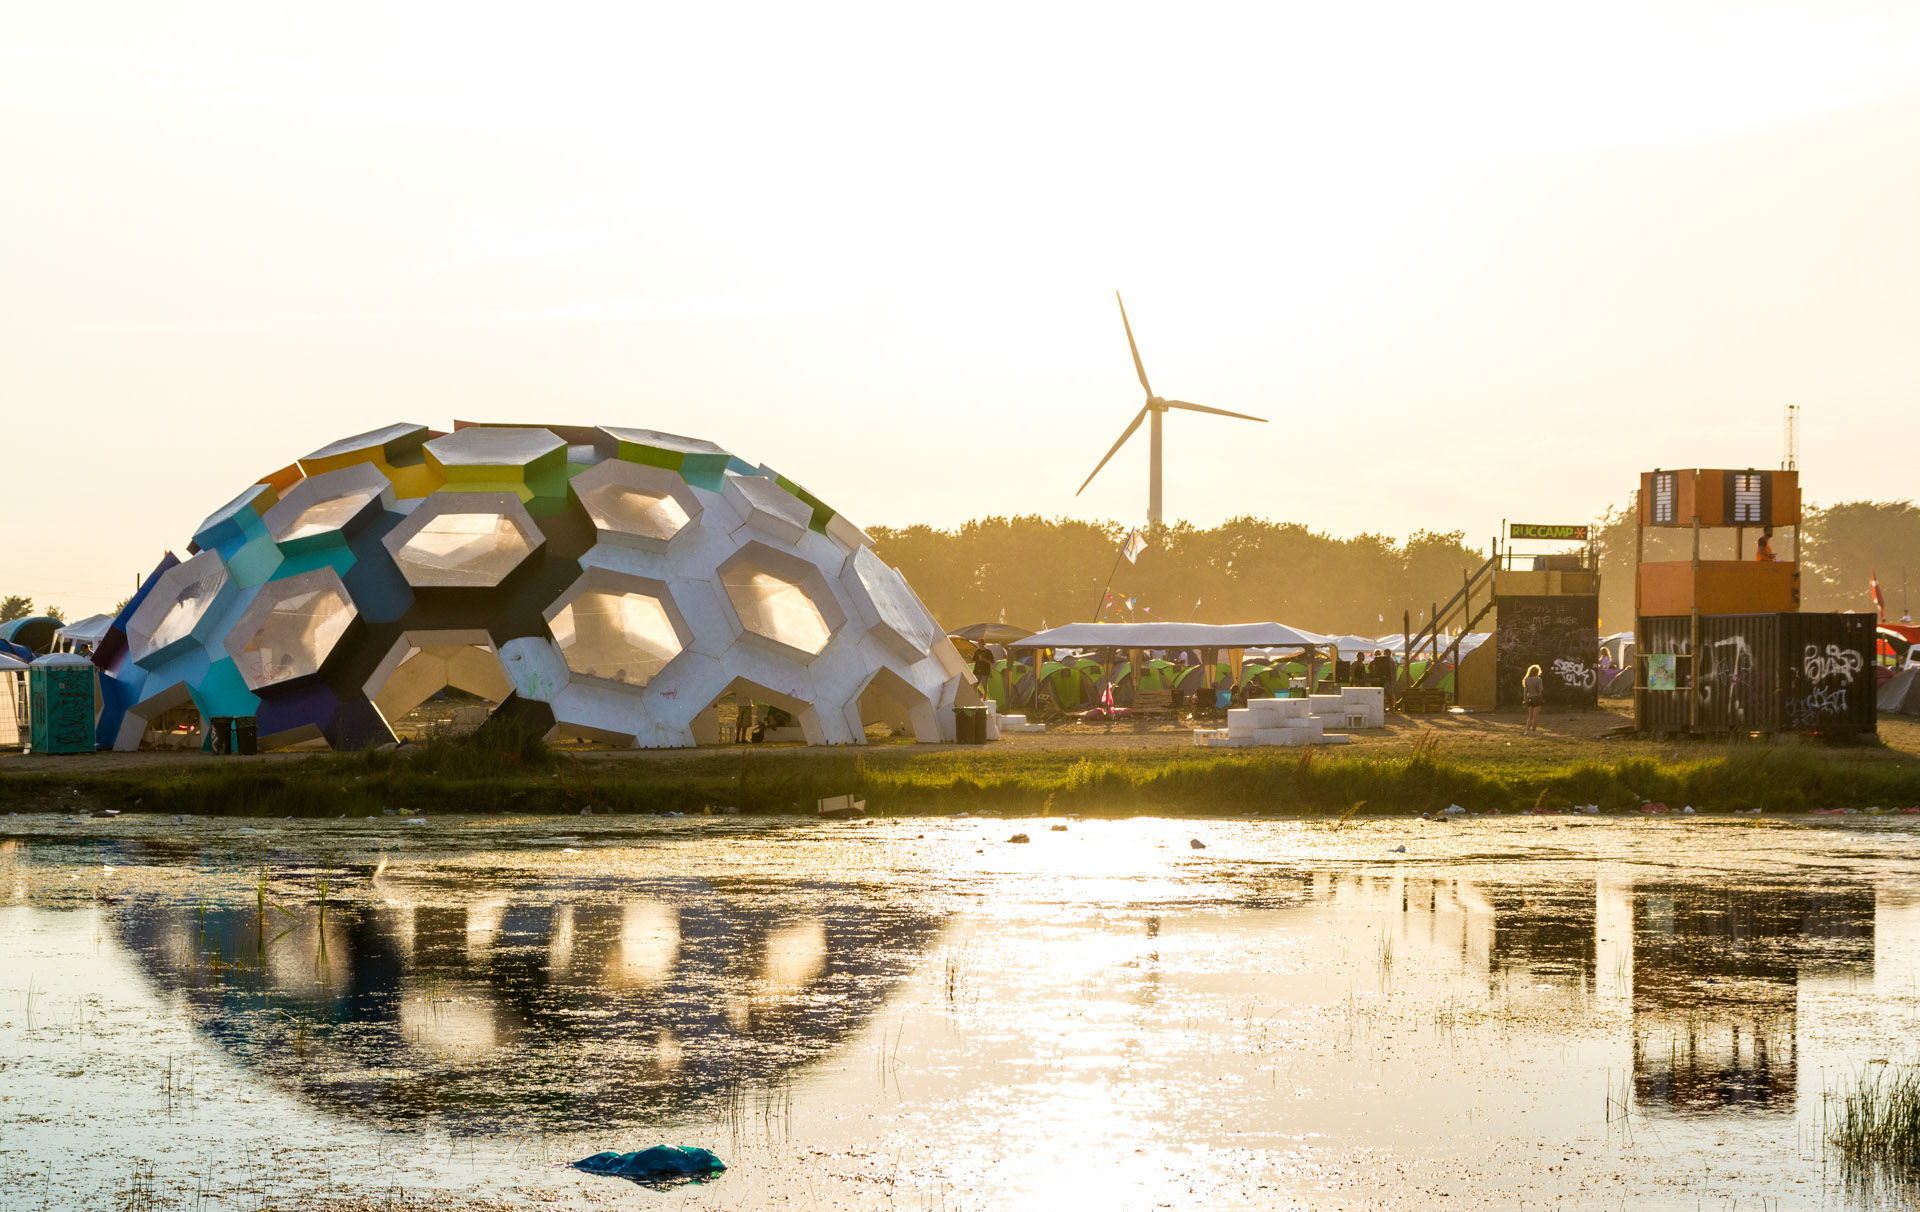 “Dream City”, en bærekraftig camp på Roskildefestivalen, er et eksempel på en måte å fremme klimavennlig tenkning på som ikke skaper frykt, og som oppfordrer til deltakelse. Foto: Thomas Rousing, lisensiert under CC BY 2.0. 